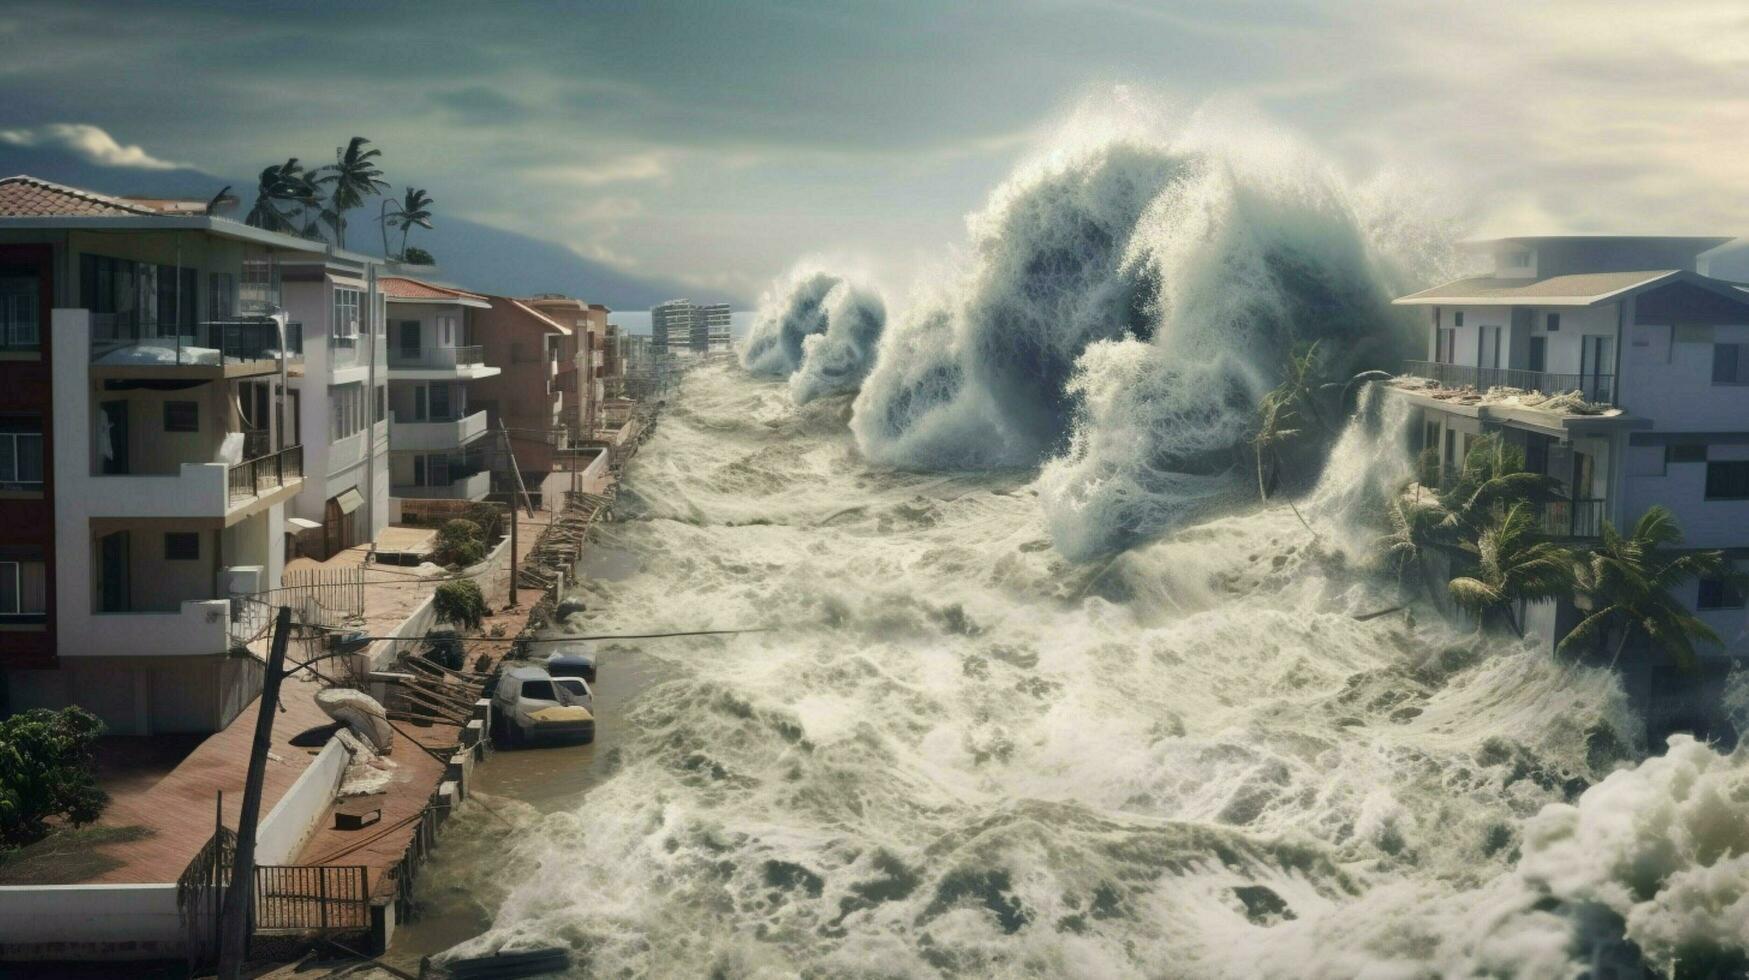 tsunami ola choques dentro costero pueblo destruir foto